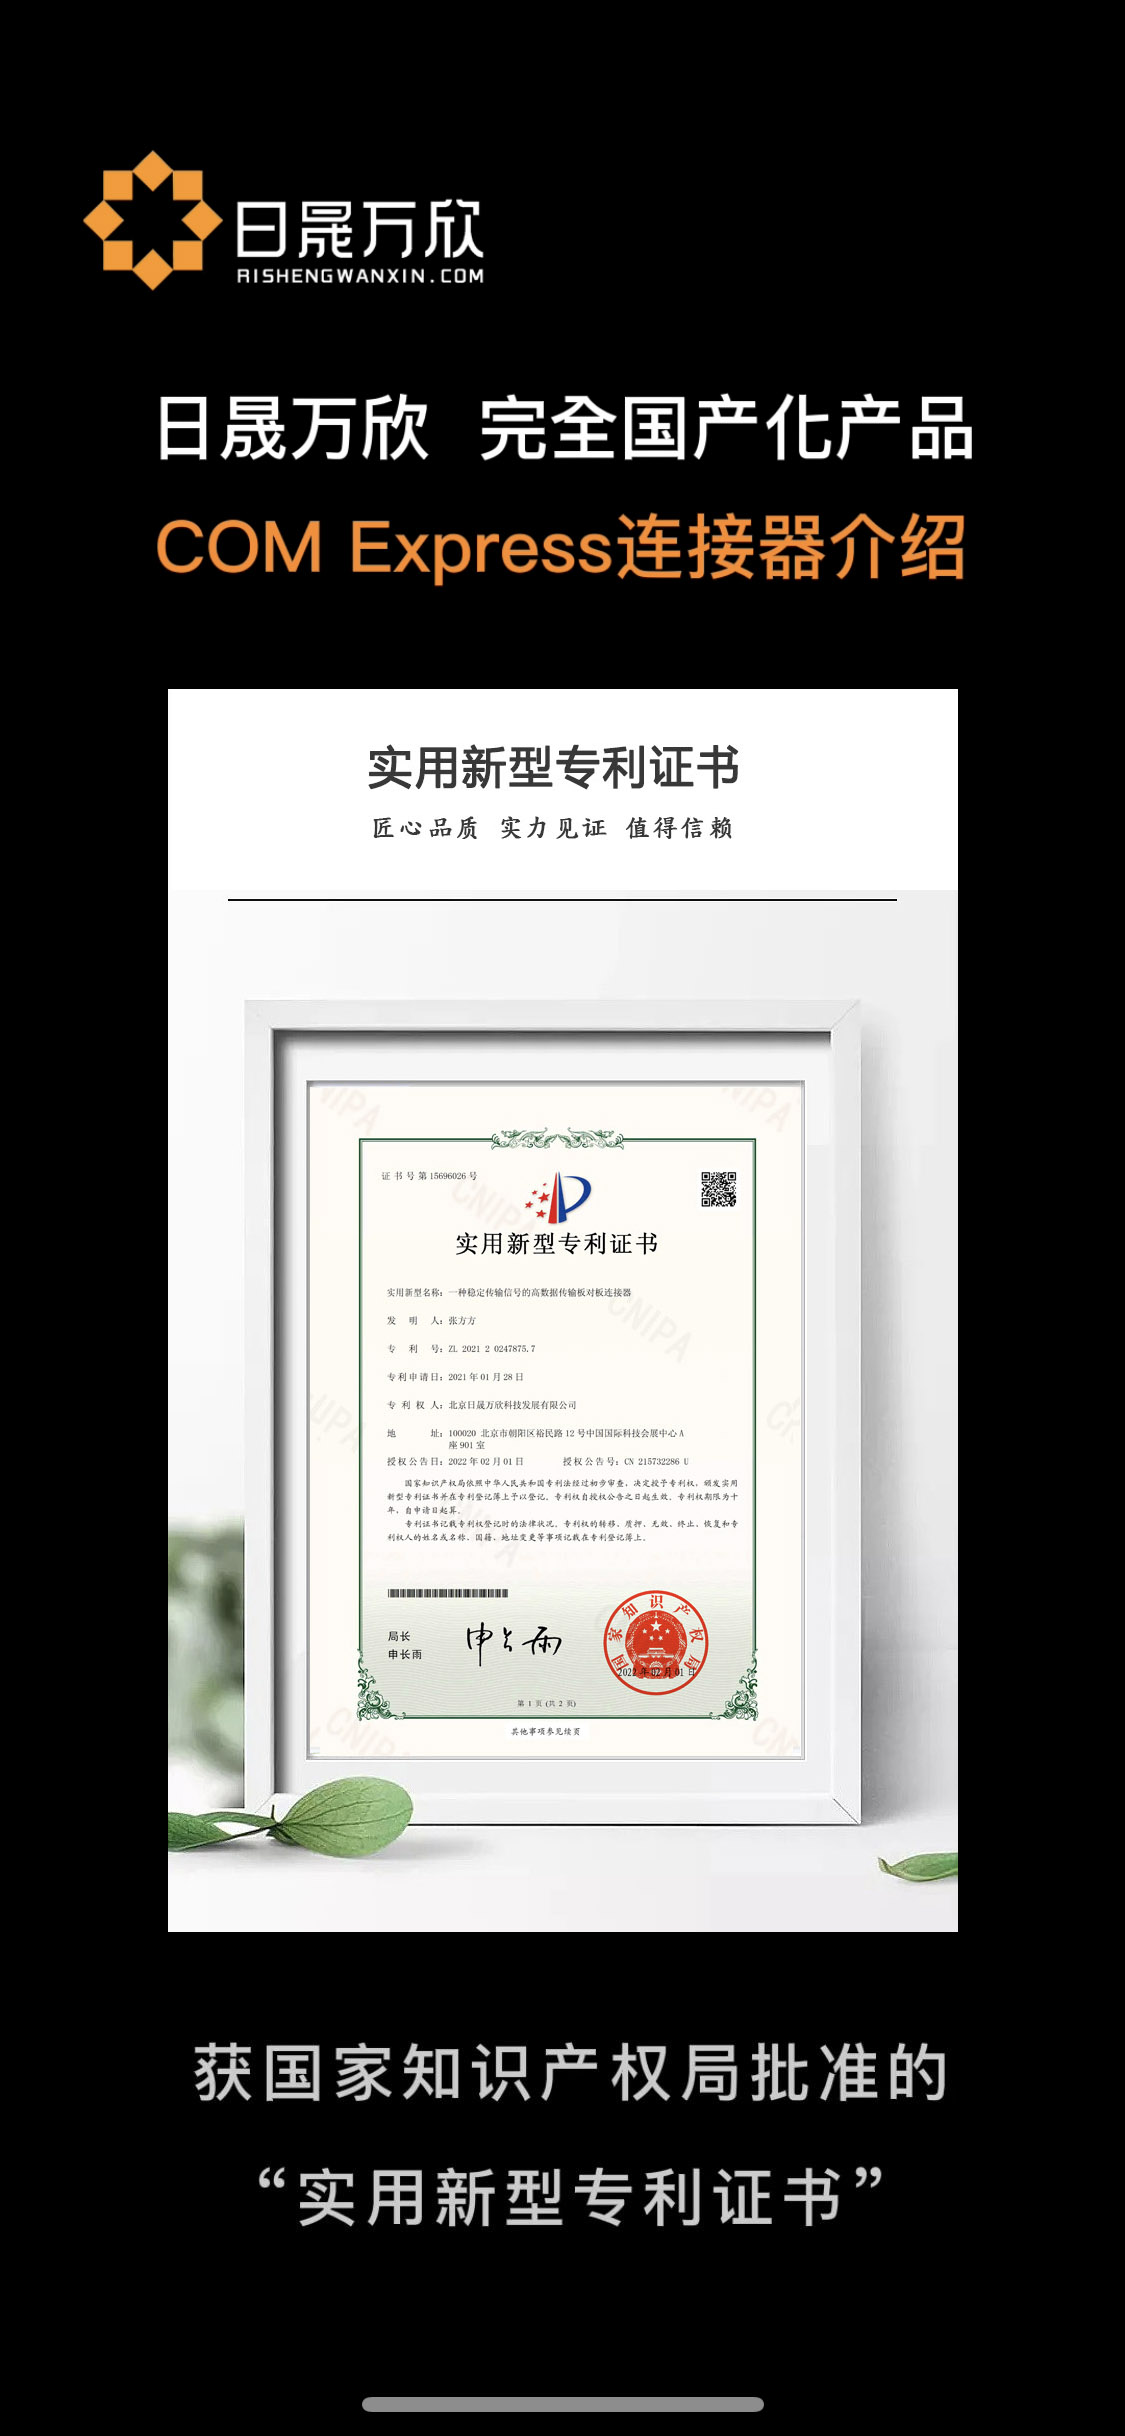 日晟万欣喜获国家知识产权局批准的“实用新型专利证书” #COM Express
 